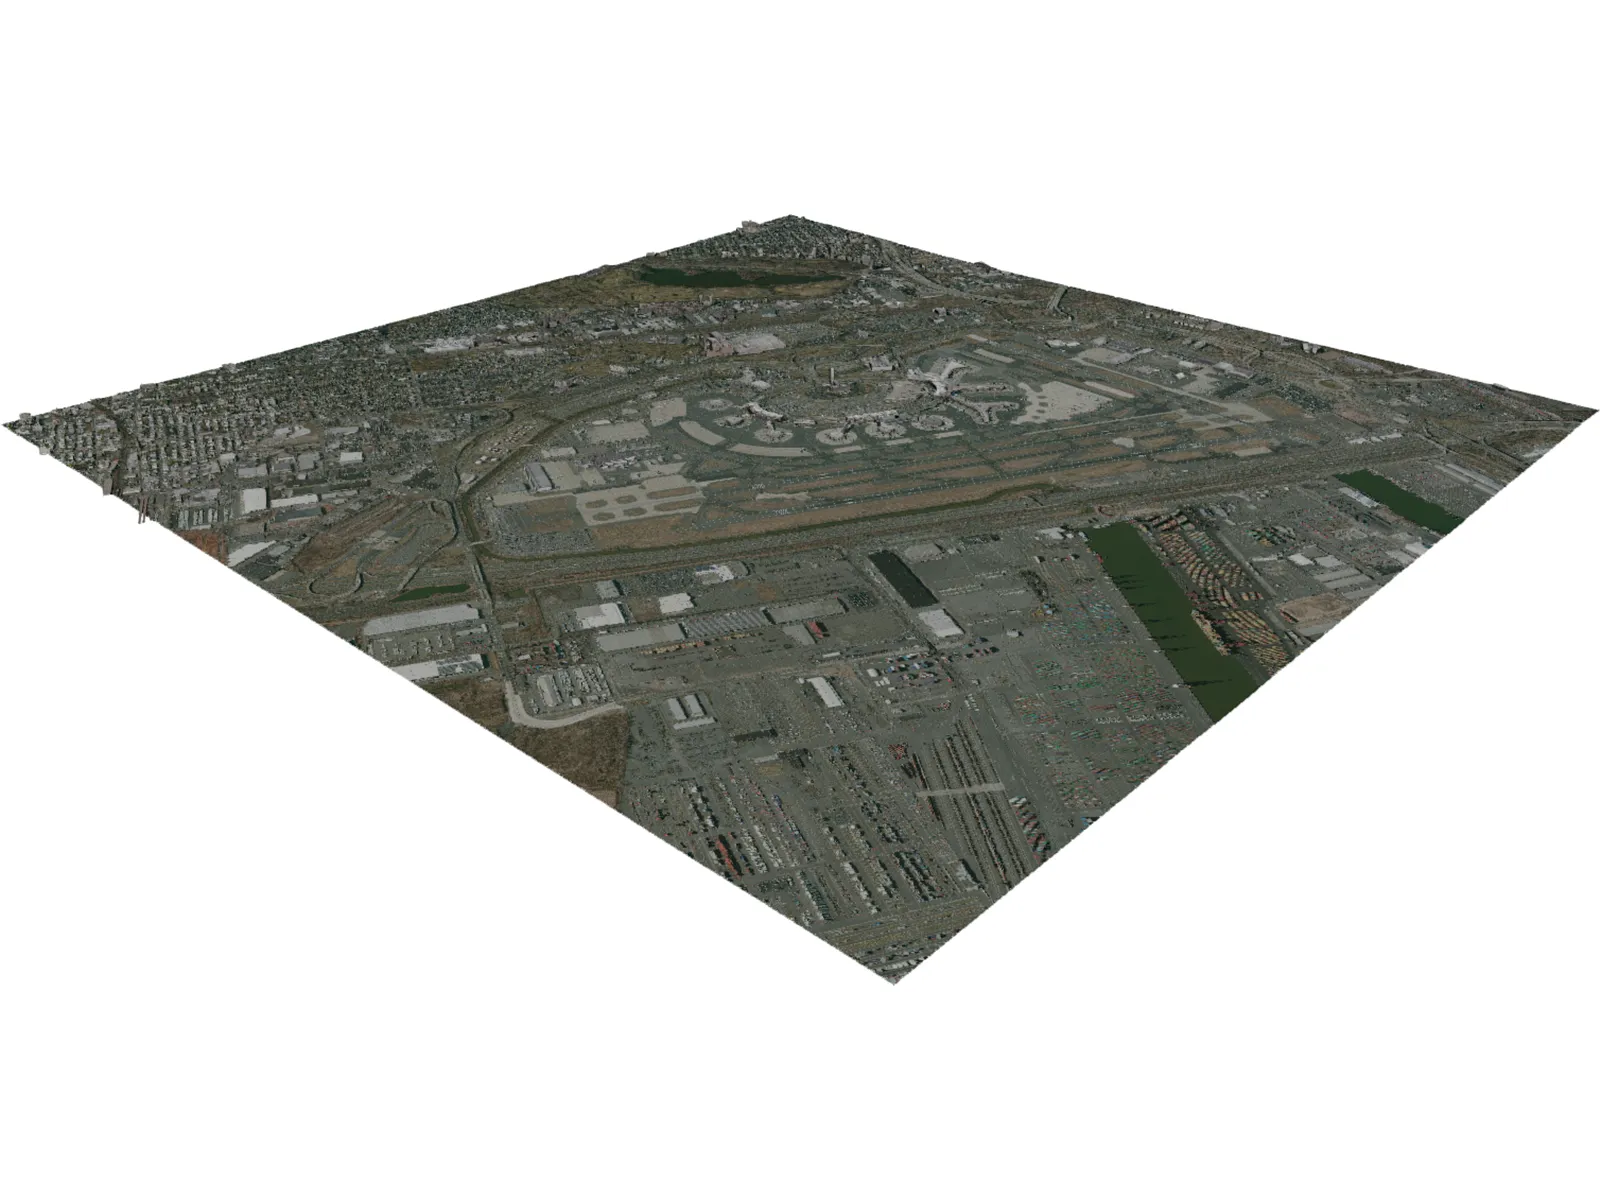 Newark International Airport 3D Model